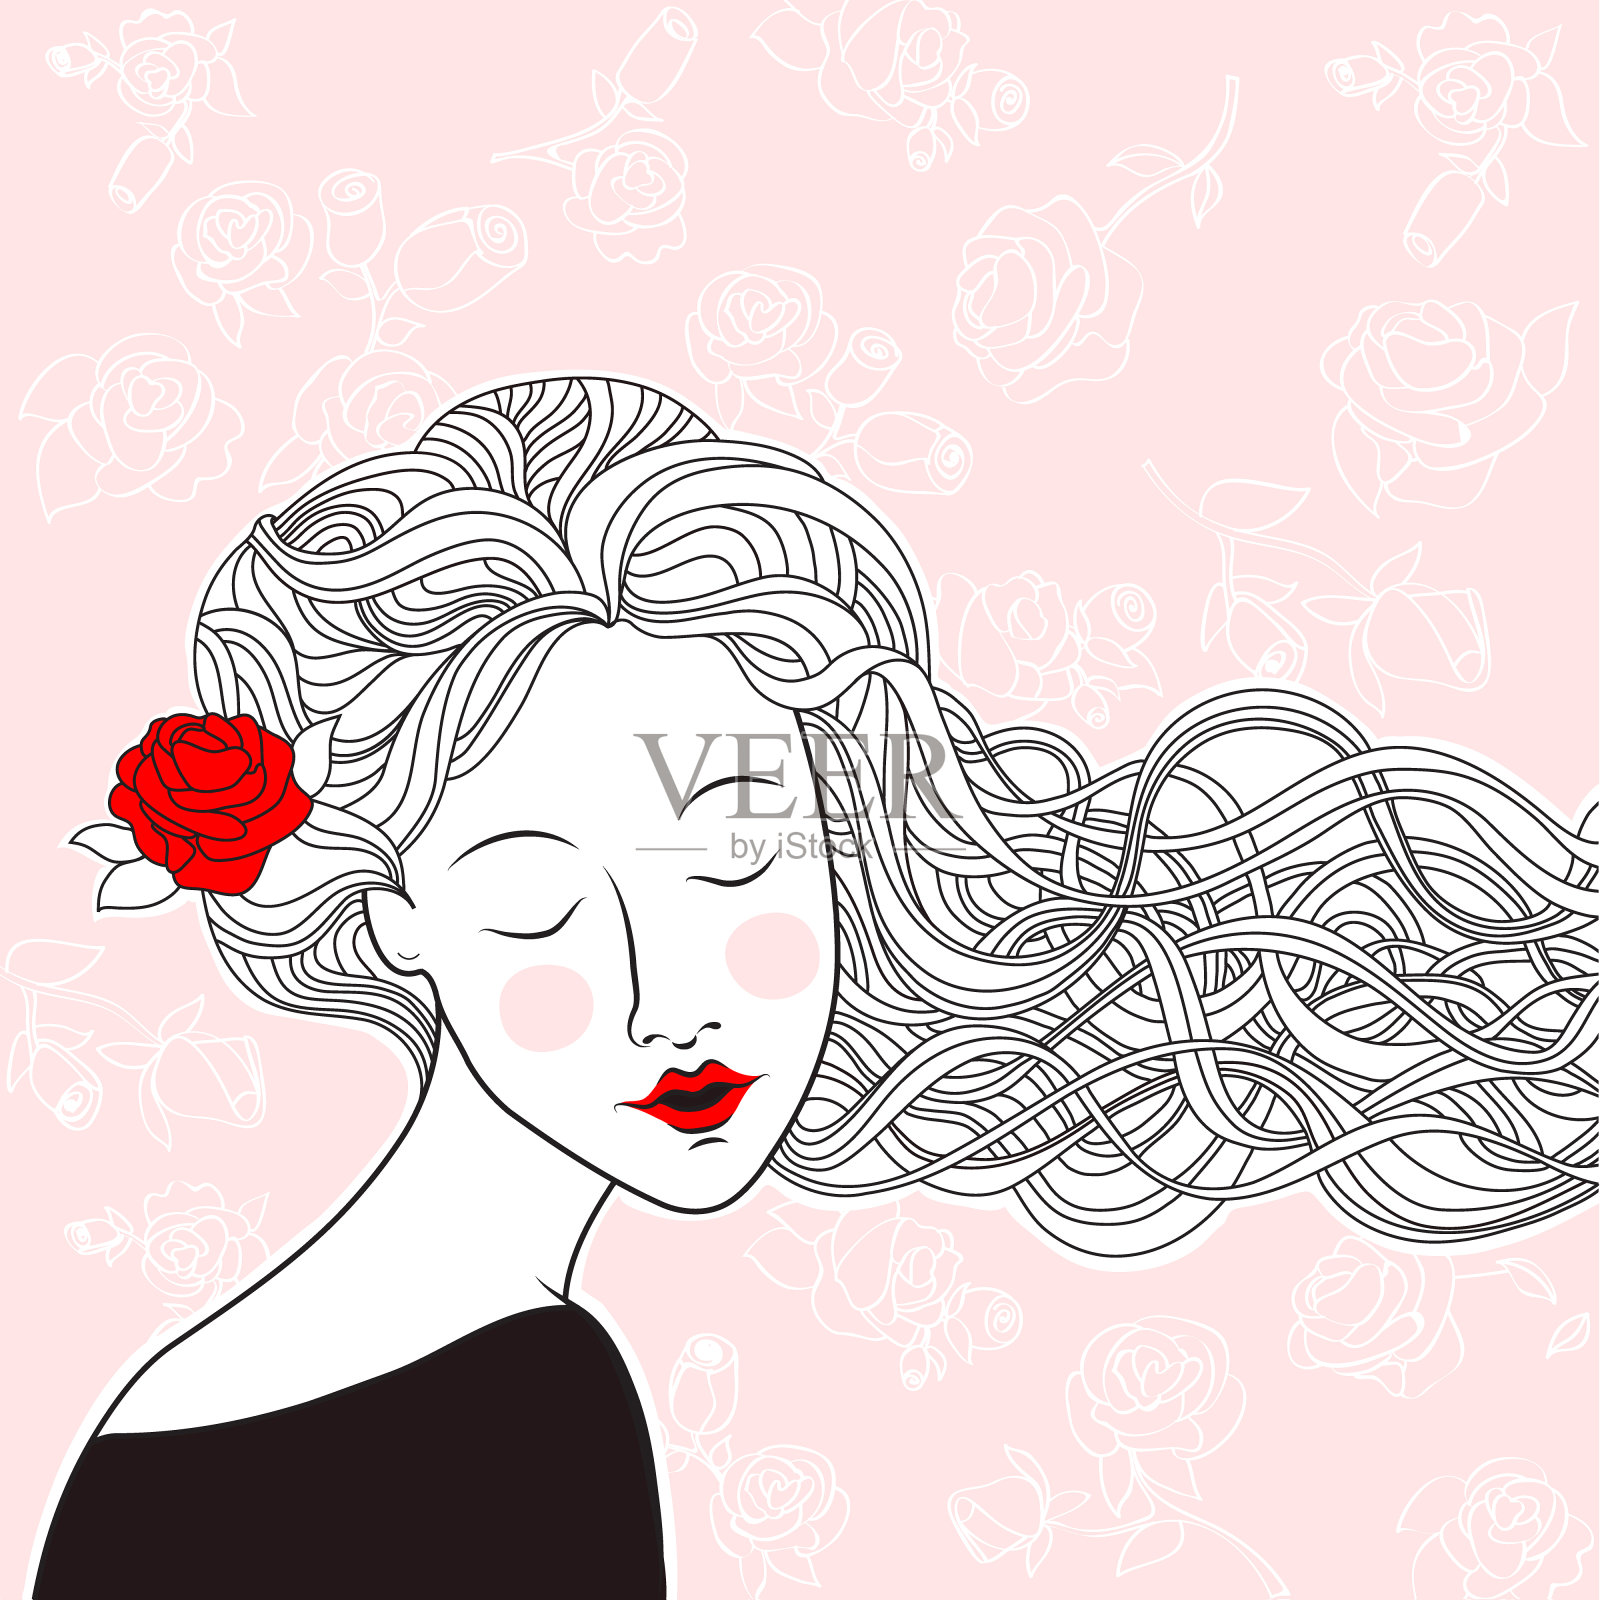 一头玫瑰发的漂亮姑娘插画图片素材